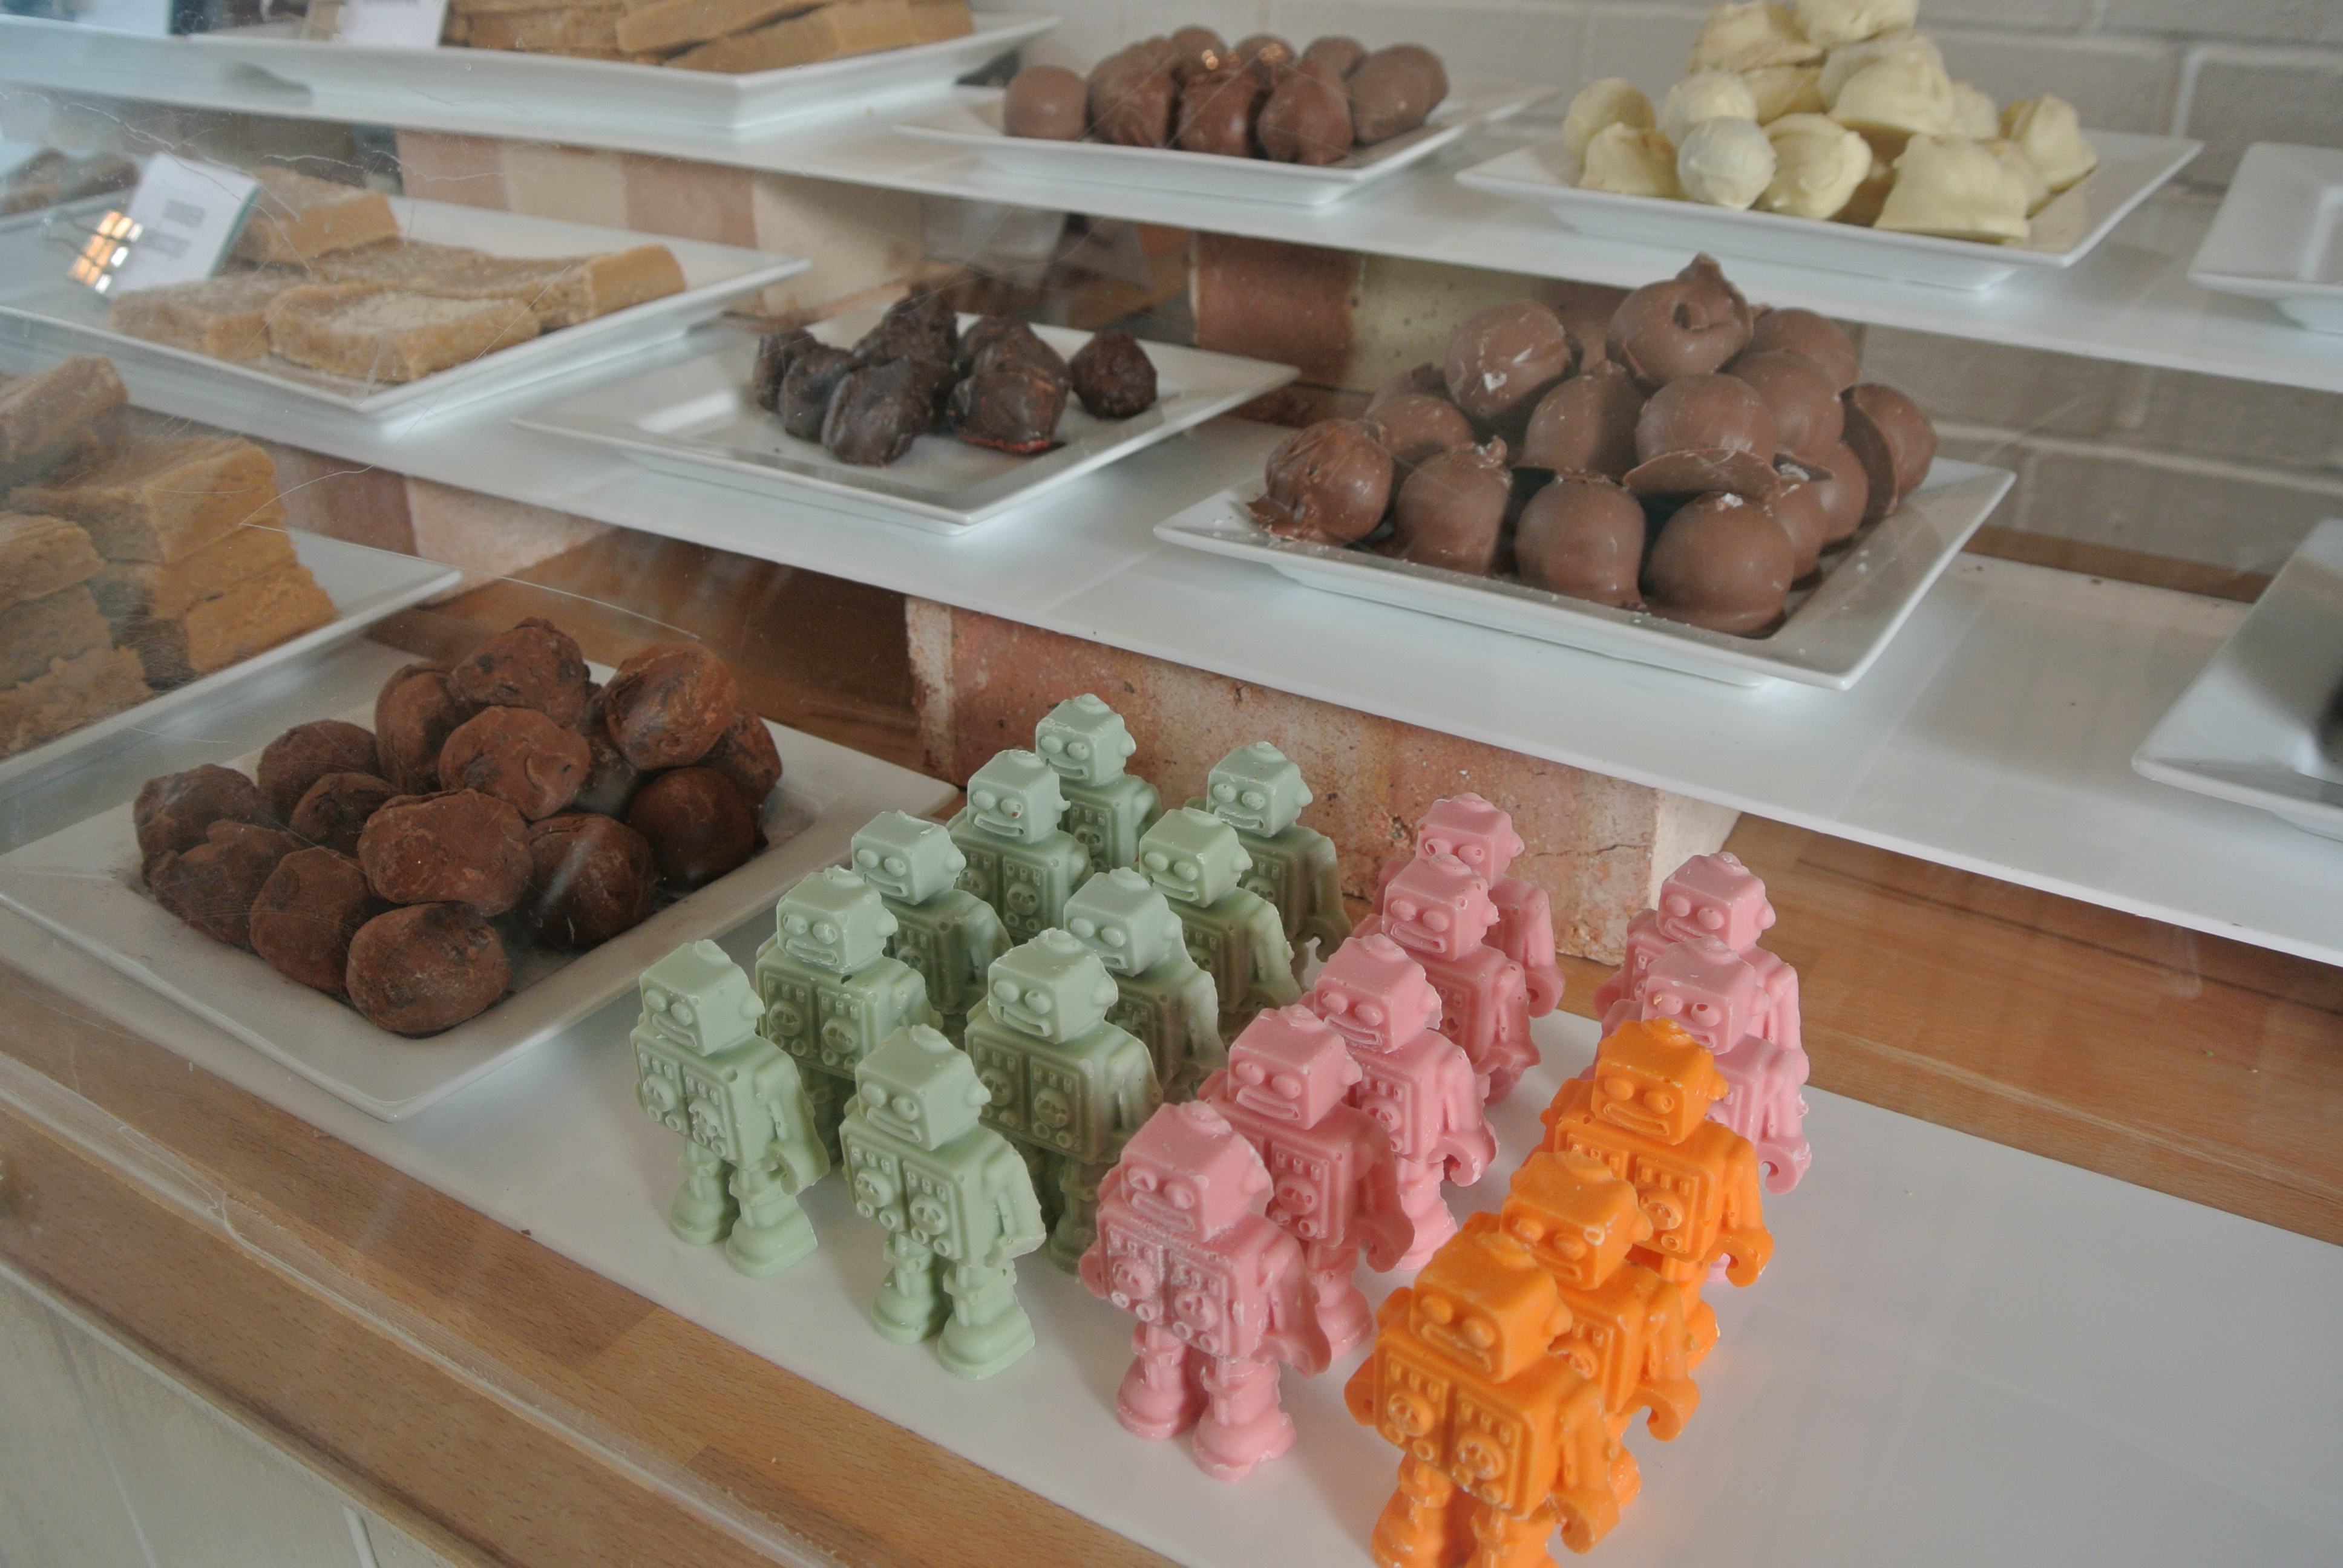 Chocolate bots at Chocoate & Fudge Kitchen.